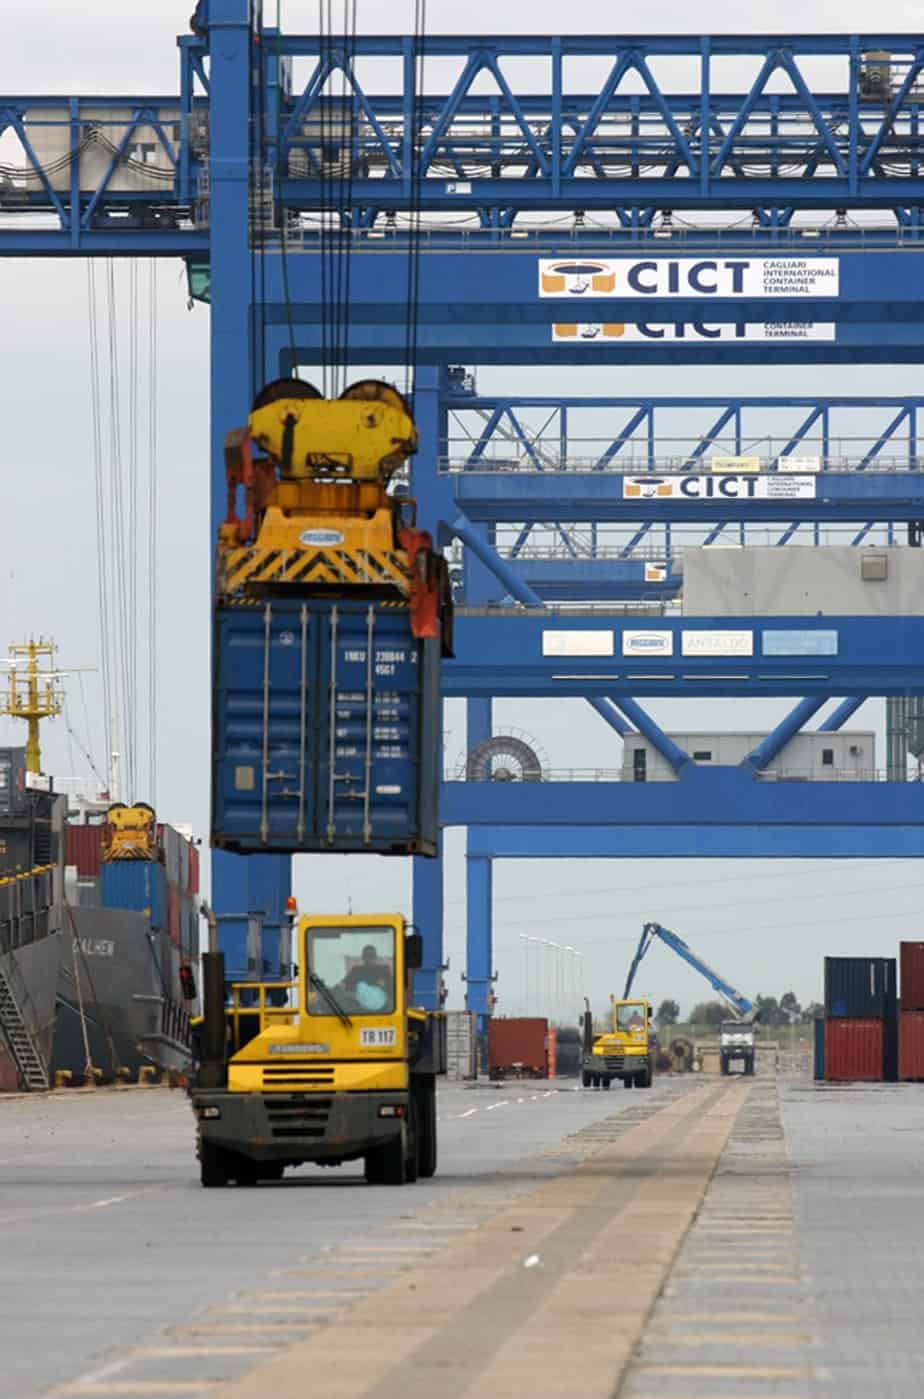 Lo sbarco e l’imbarco container dal porto di Cagliari: la viabilità per l’accesso al porto andrebbe potenziata; i progetti ci sono ma un ricorso sulla proprietà delle aree ha bloccato tutto